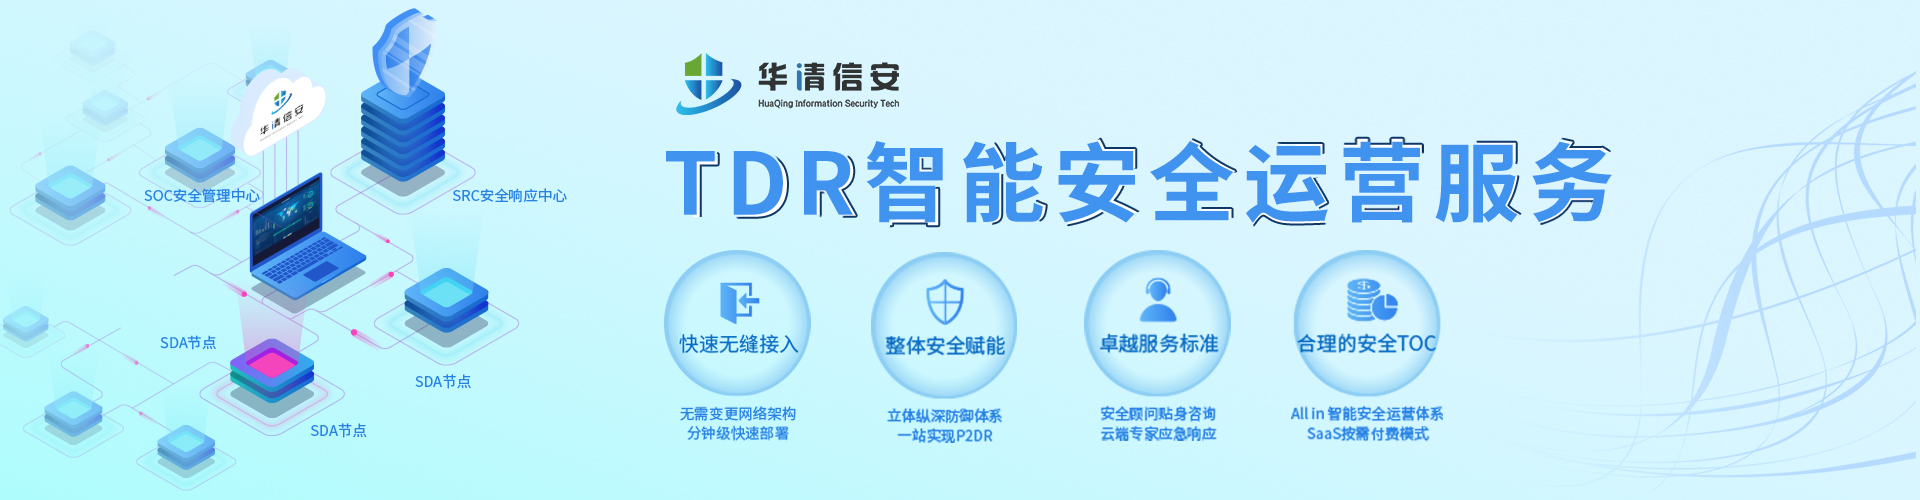 深圳門戶網站系統等級保護要求